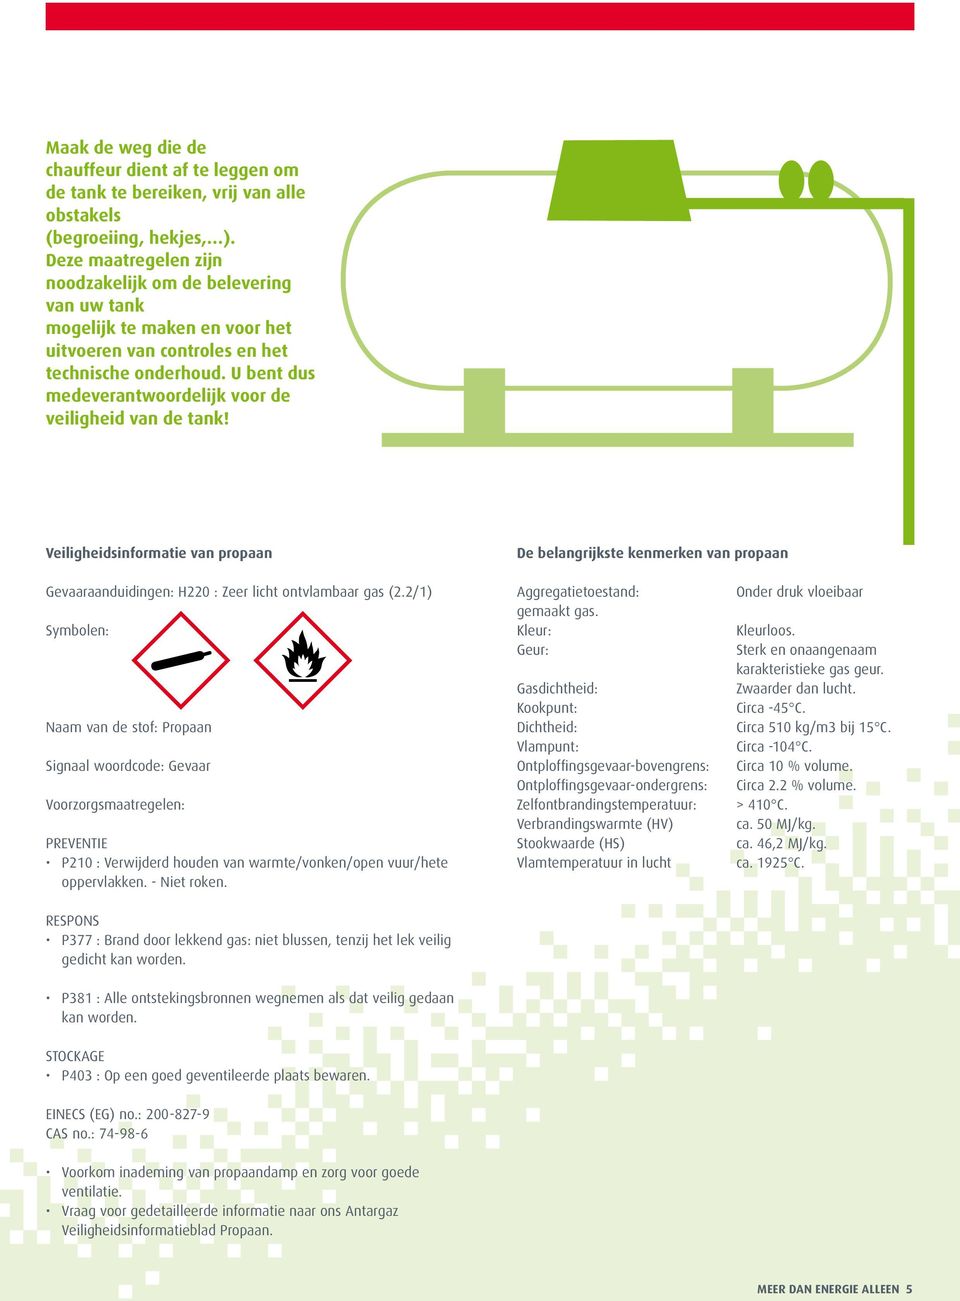 U bent dus medeverantwoordelijk voor de veiligheid van de tank! Veiligheidsinformatie van propaan De belangrijkste kenmerken van propaan Gevaaraanduidingen: H220 : Zeer licht ontvlambaar gas (2.